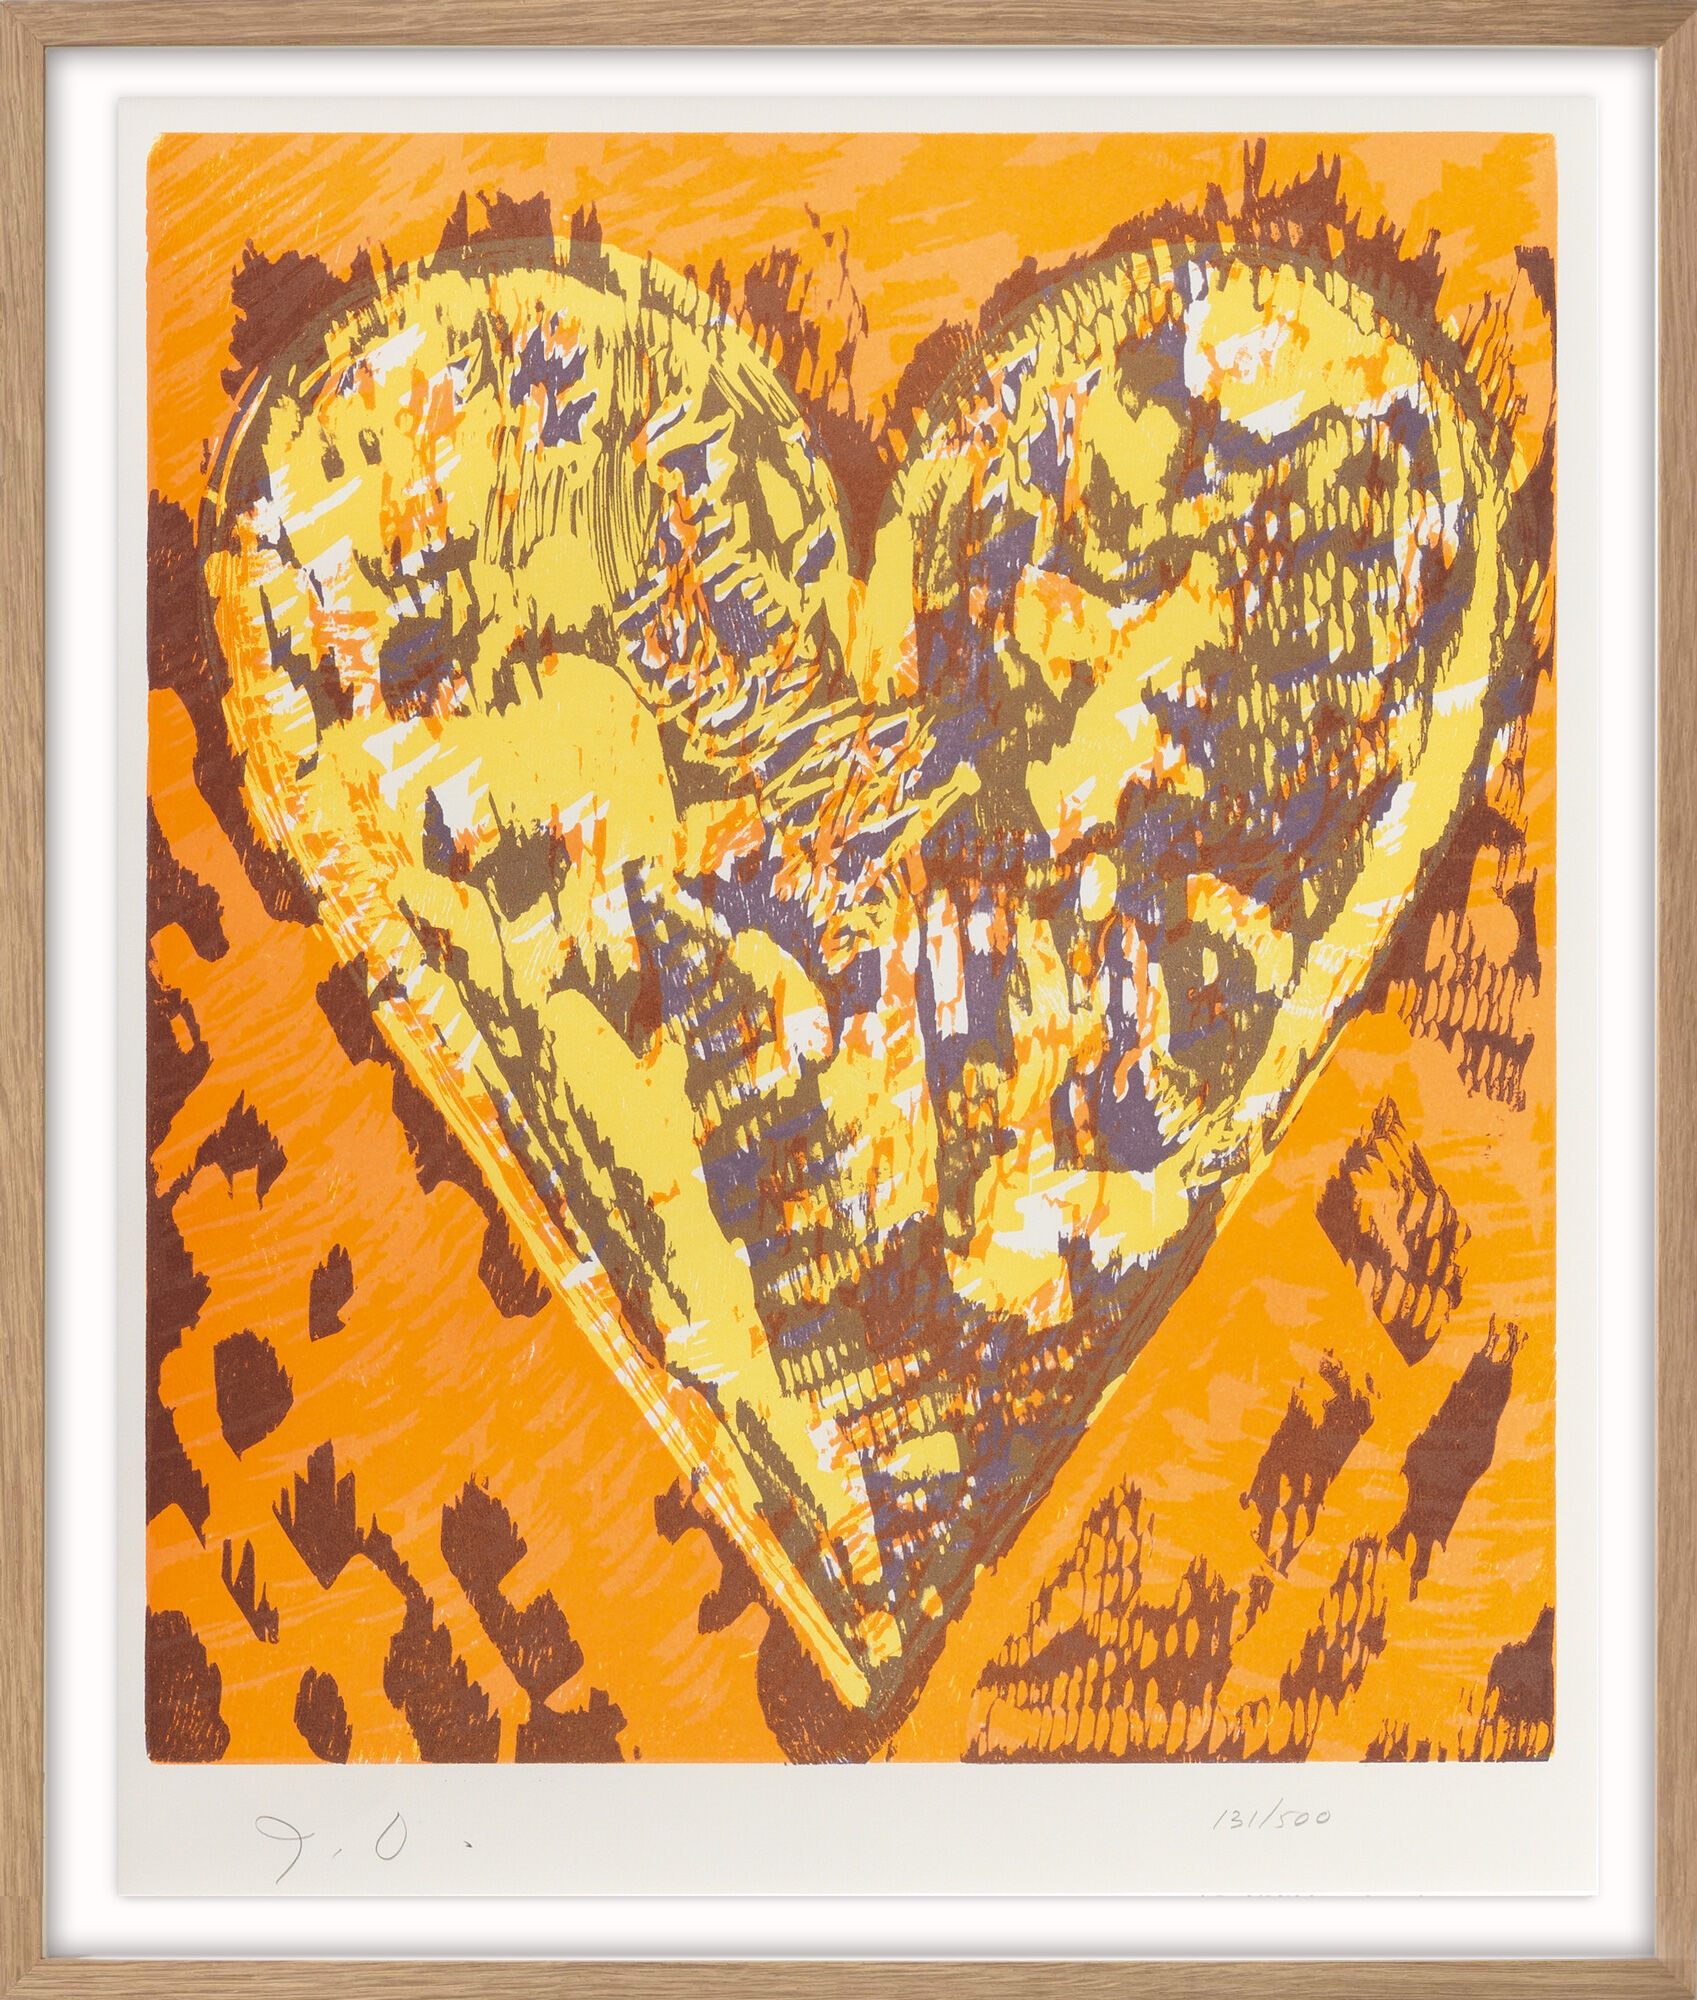 Billede "Heart" (1993) von Jim Dine